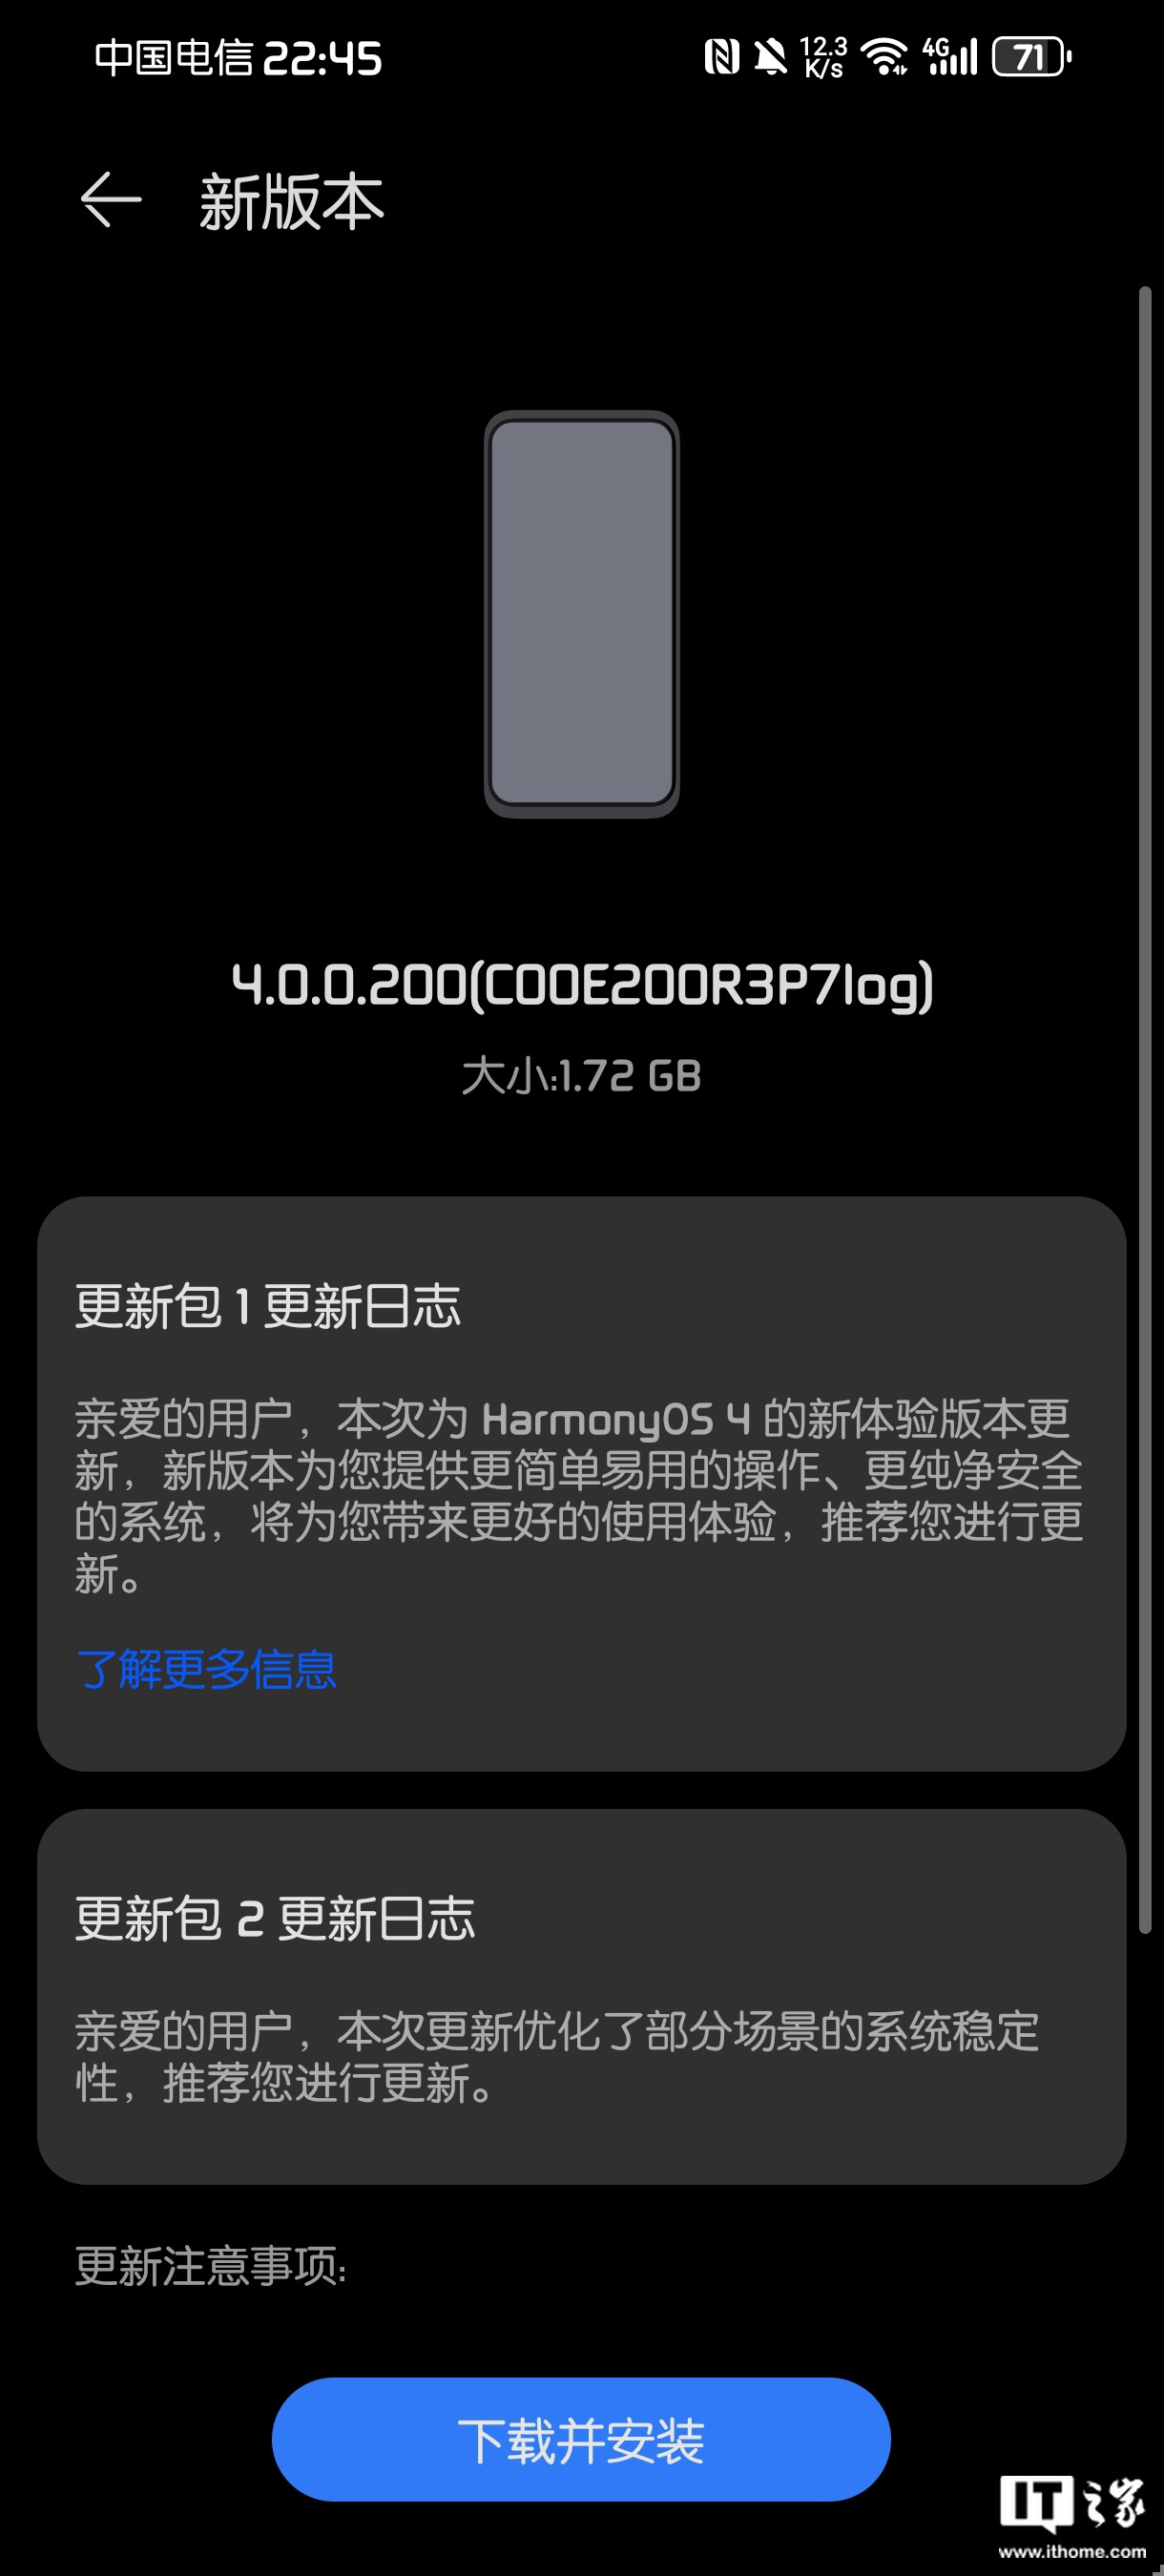 华为鸿蒙HarmonyOS4新体验版现已推送：在界面、系统、安全、应用四方面实现升级 - 通信终端